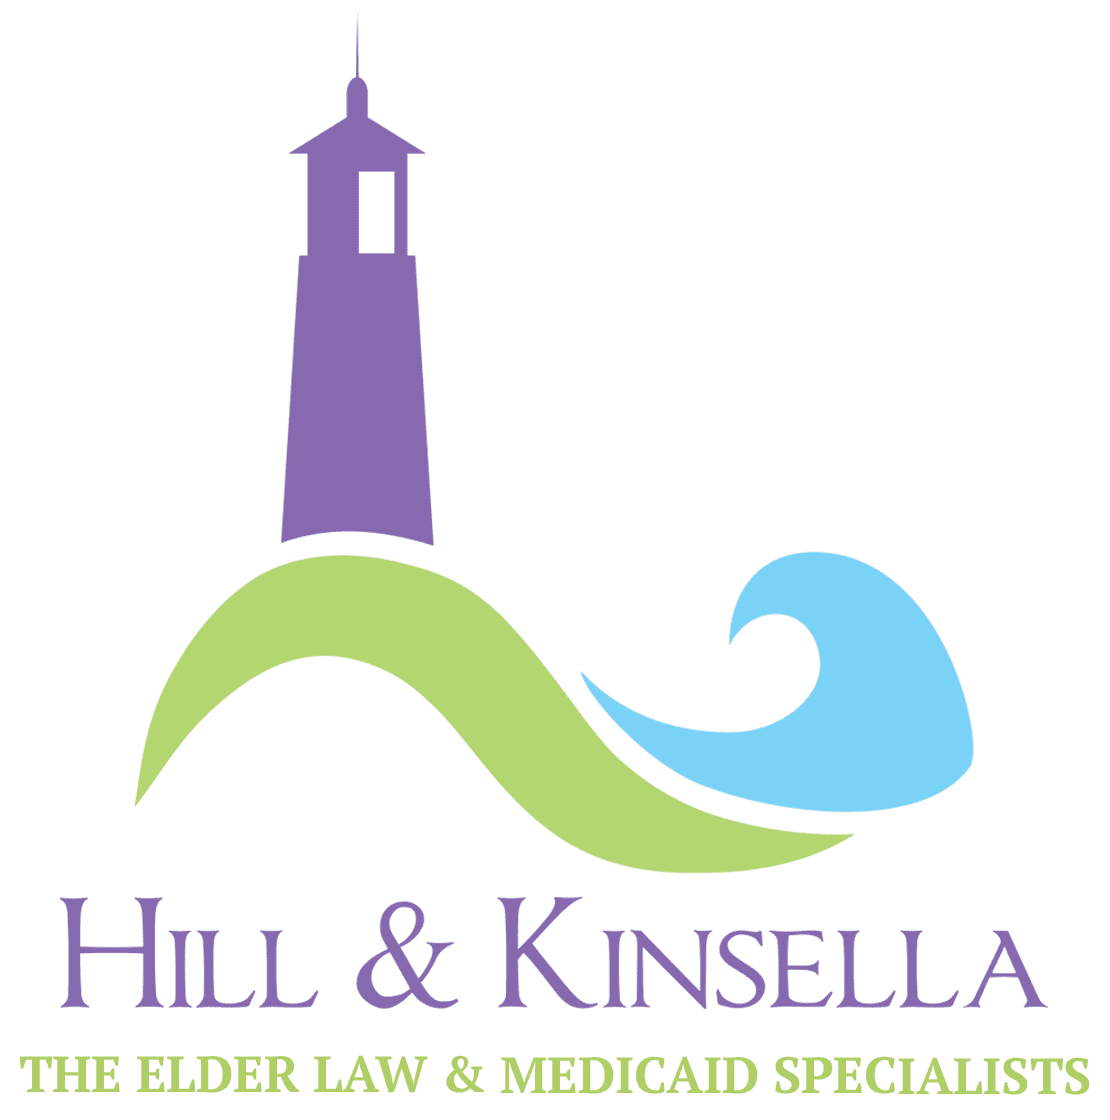 Hill & Kinsella